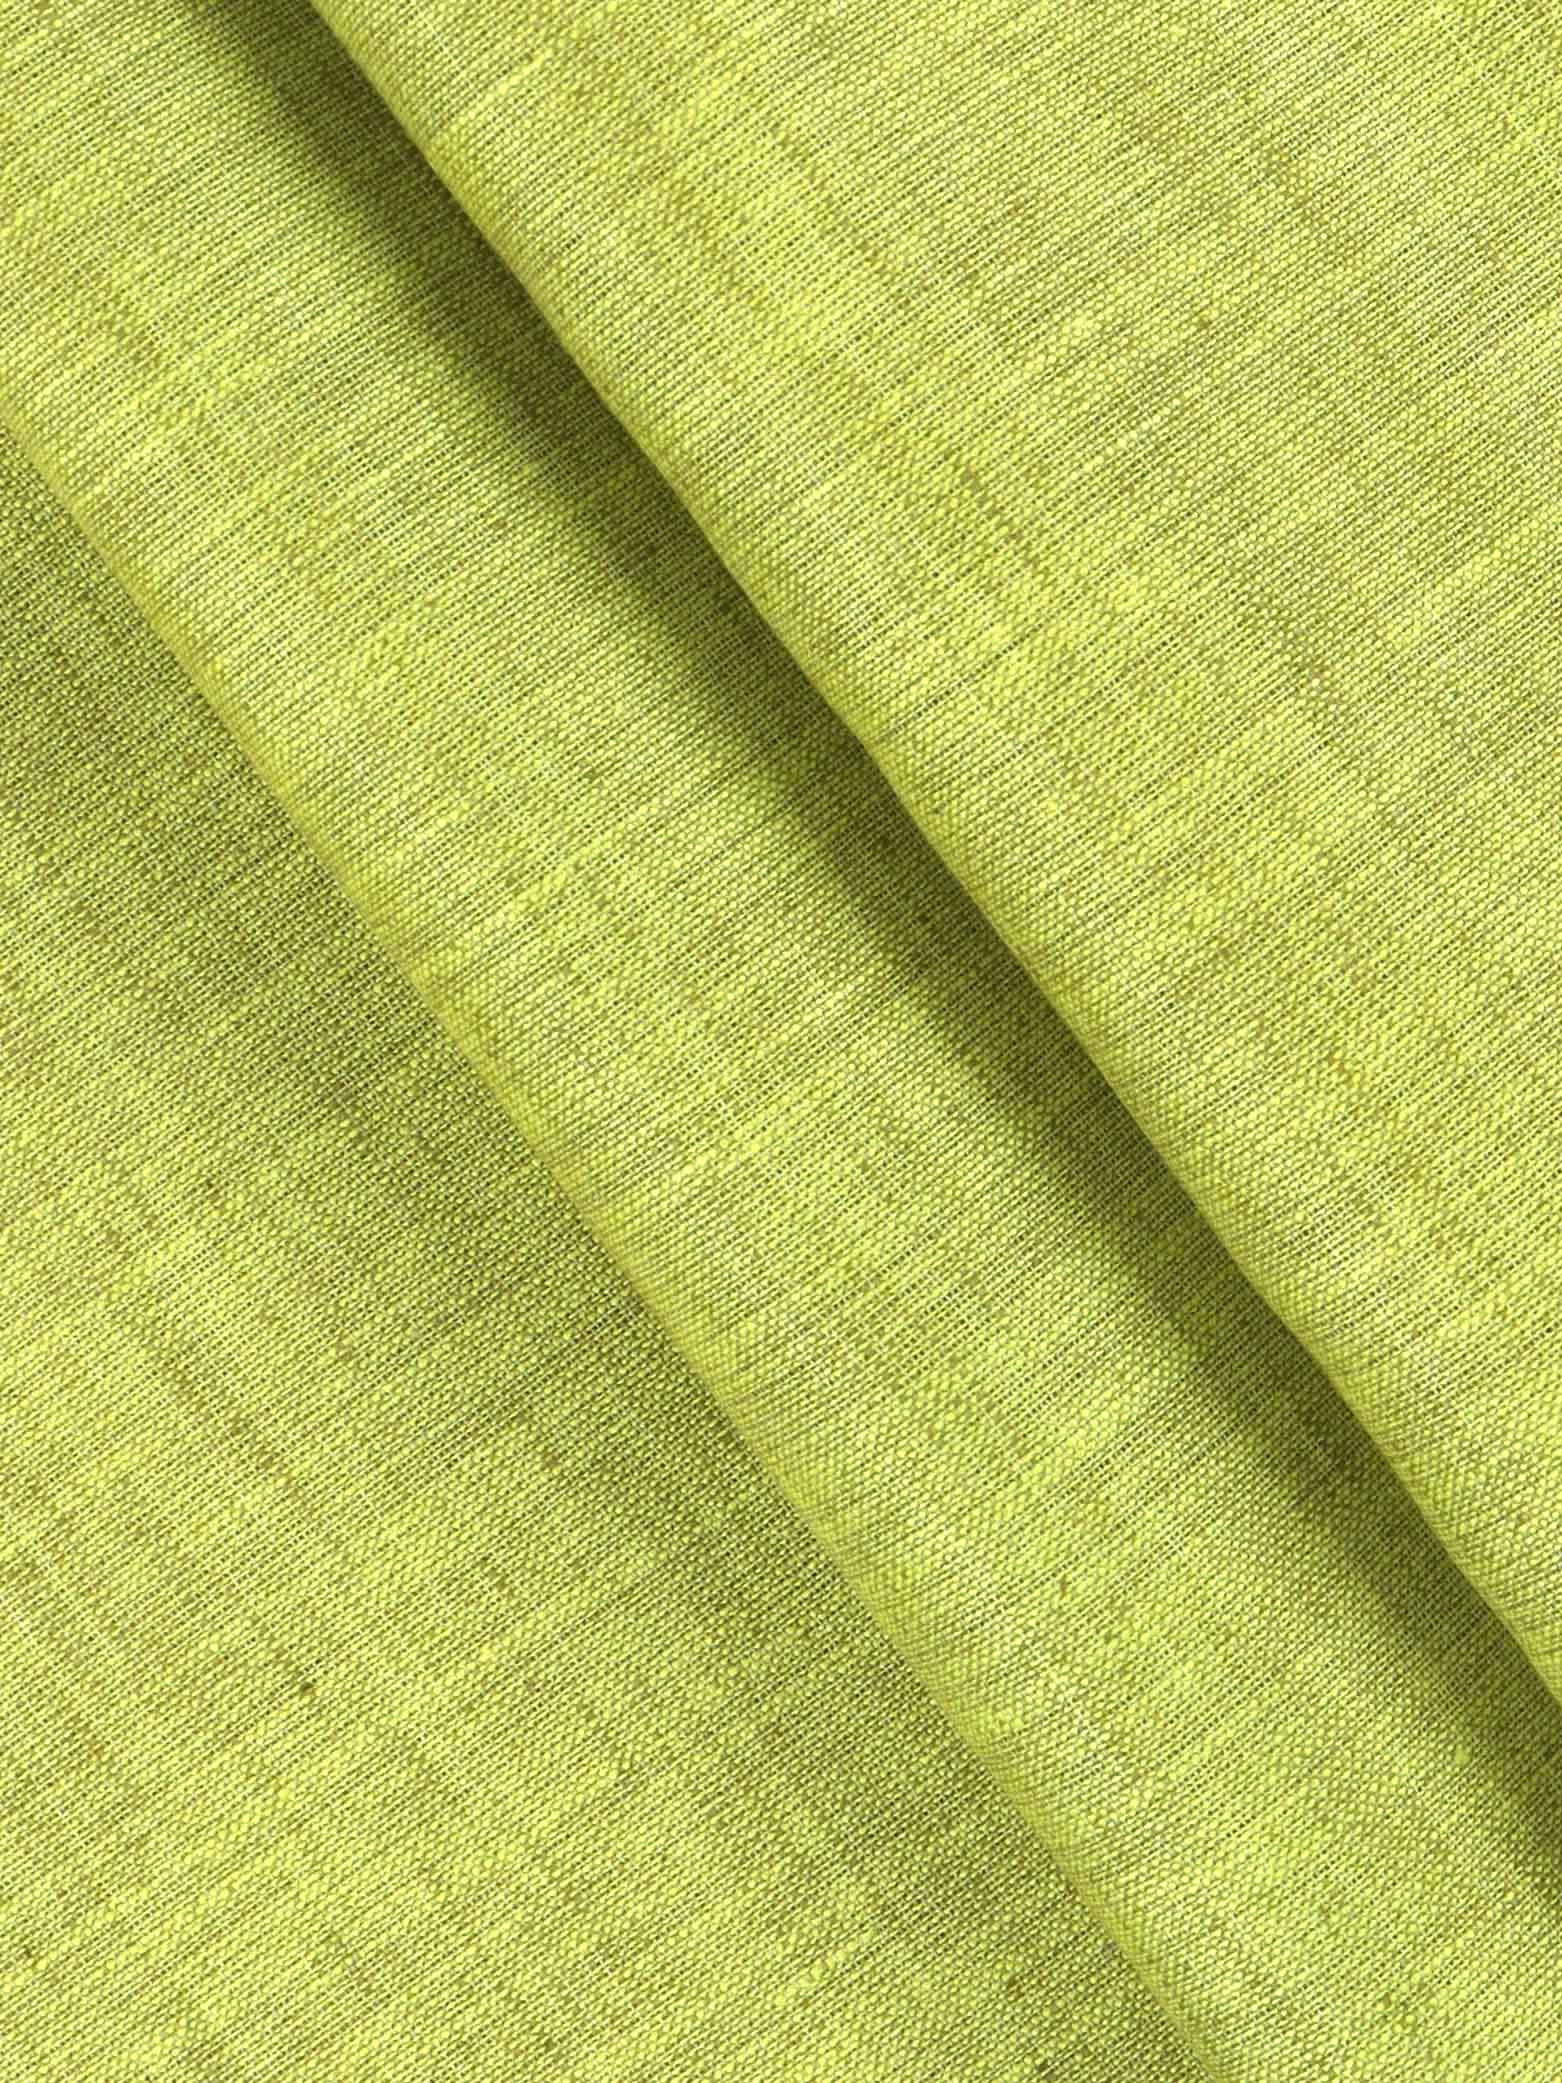 Cotton Blend Green Colour Kurtha Fabric Lampus